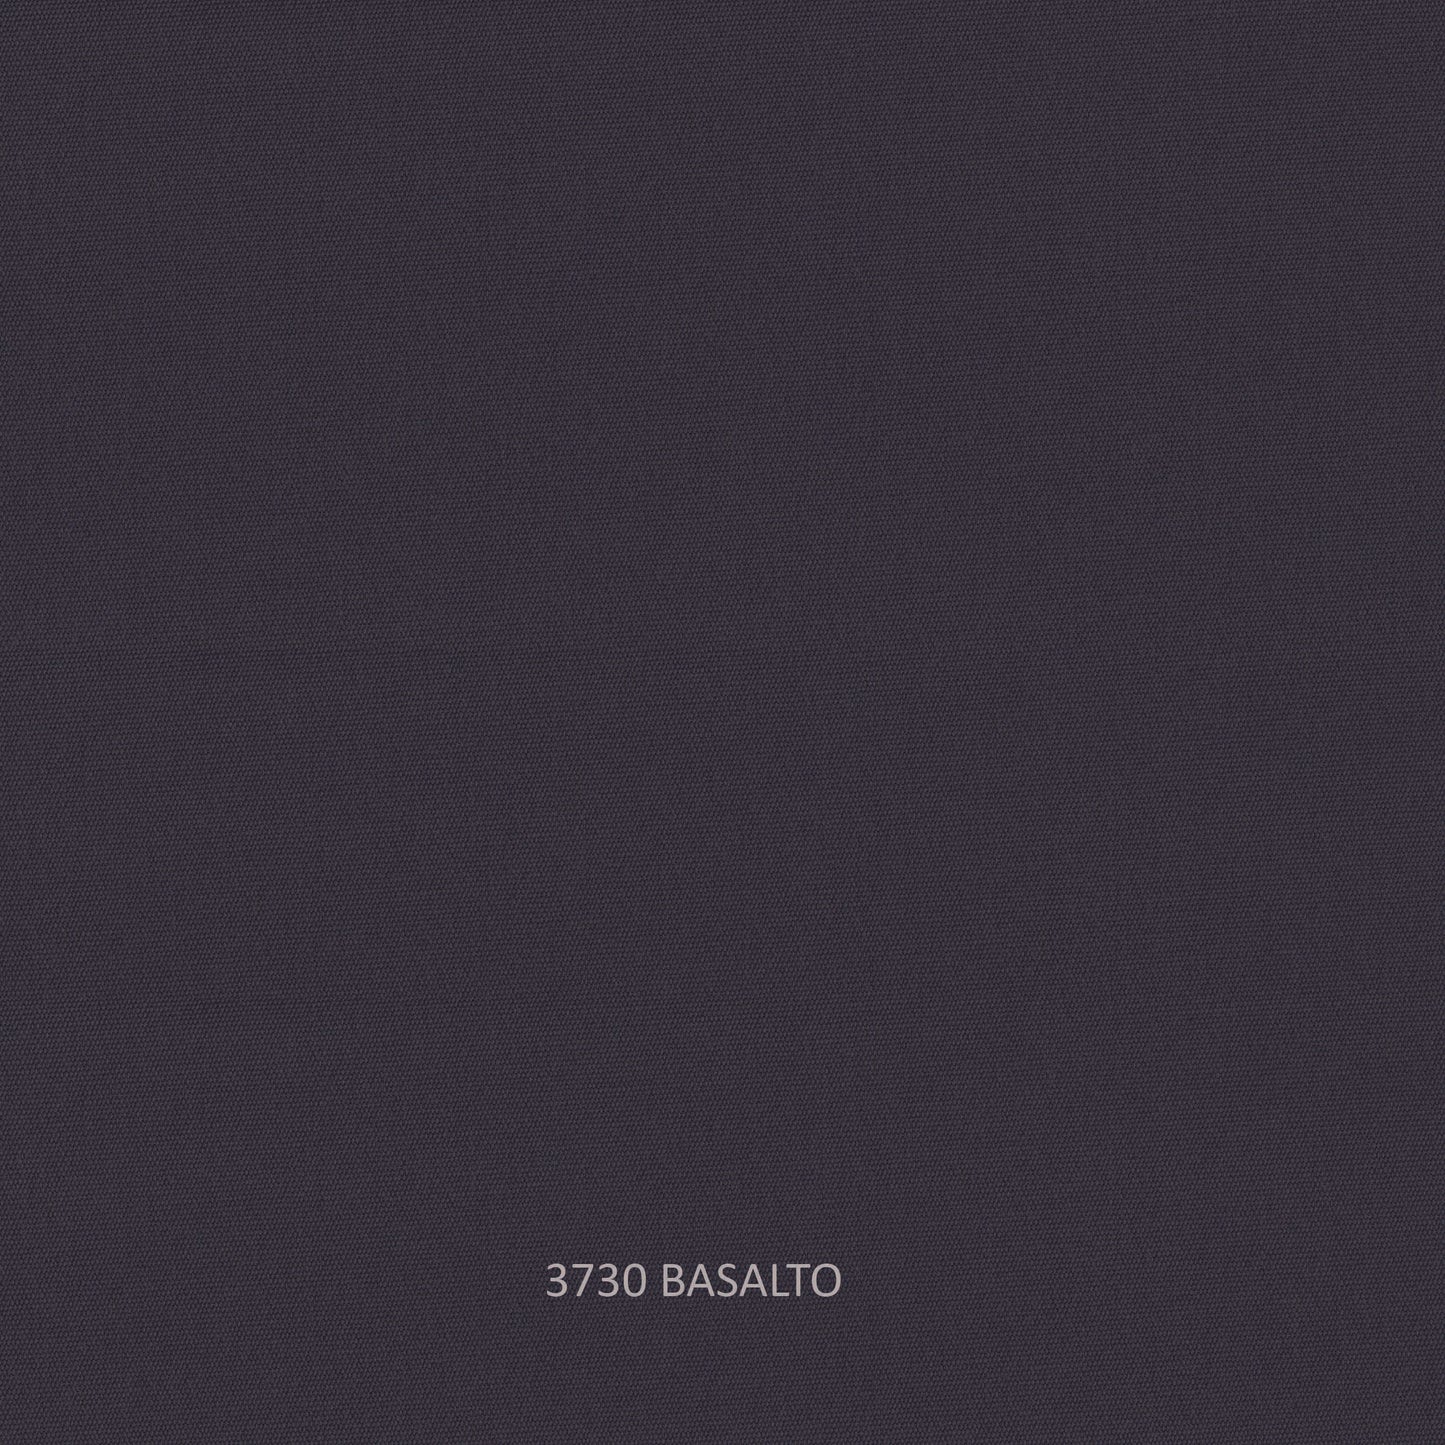 Taymar Sofa - PadioLiving - Taymar Sofa - Outdoor Sofa - Basalto(£1953) - PadioLiving